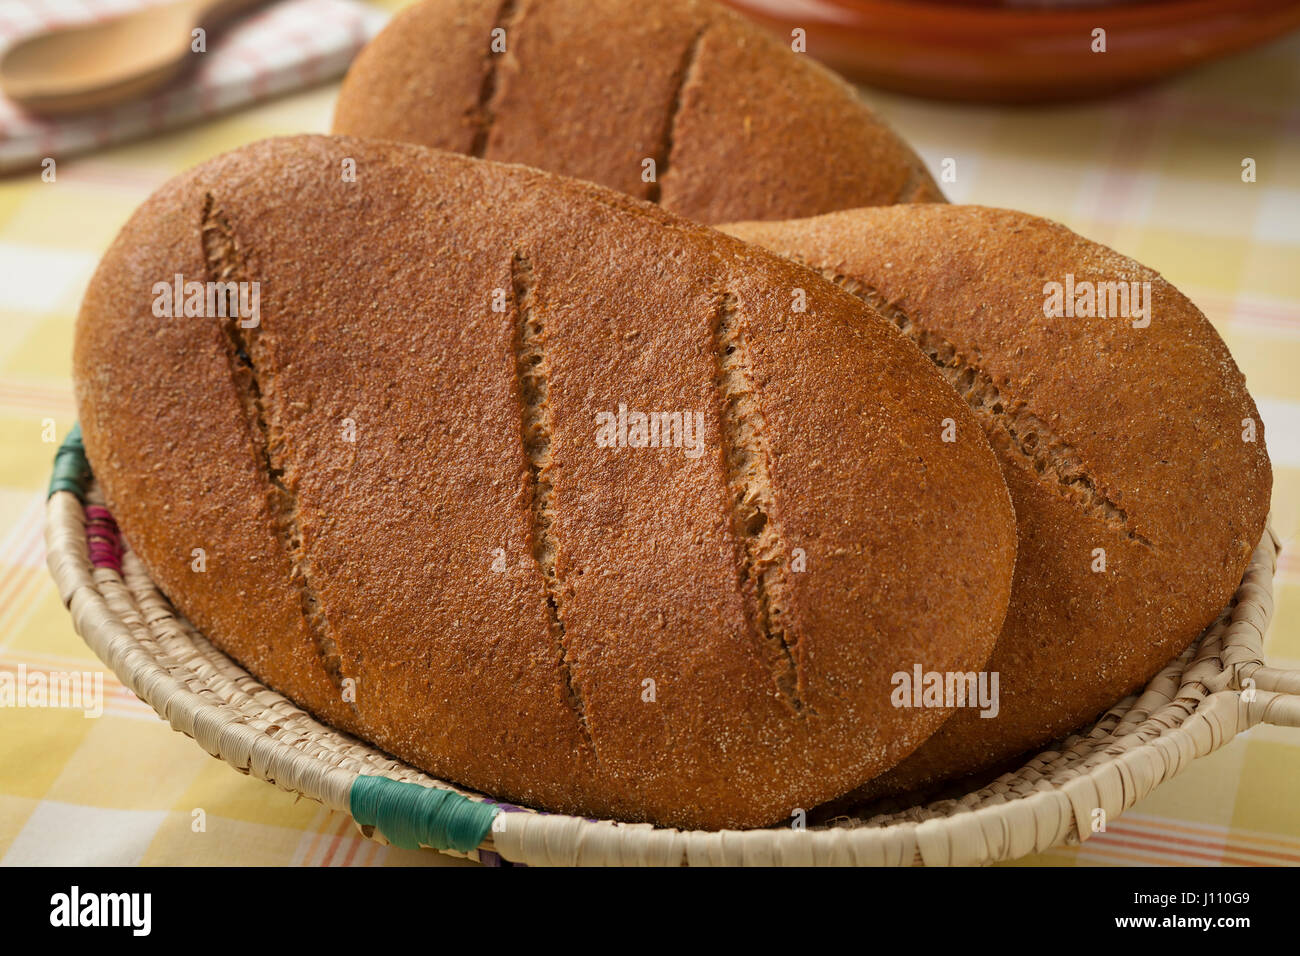 Panier avec du pain marocain Banque D'Images